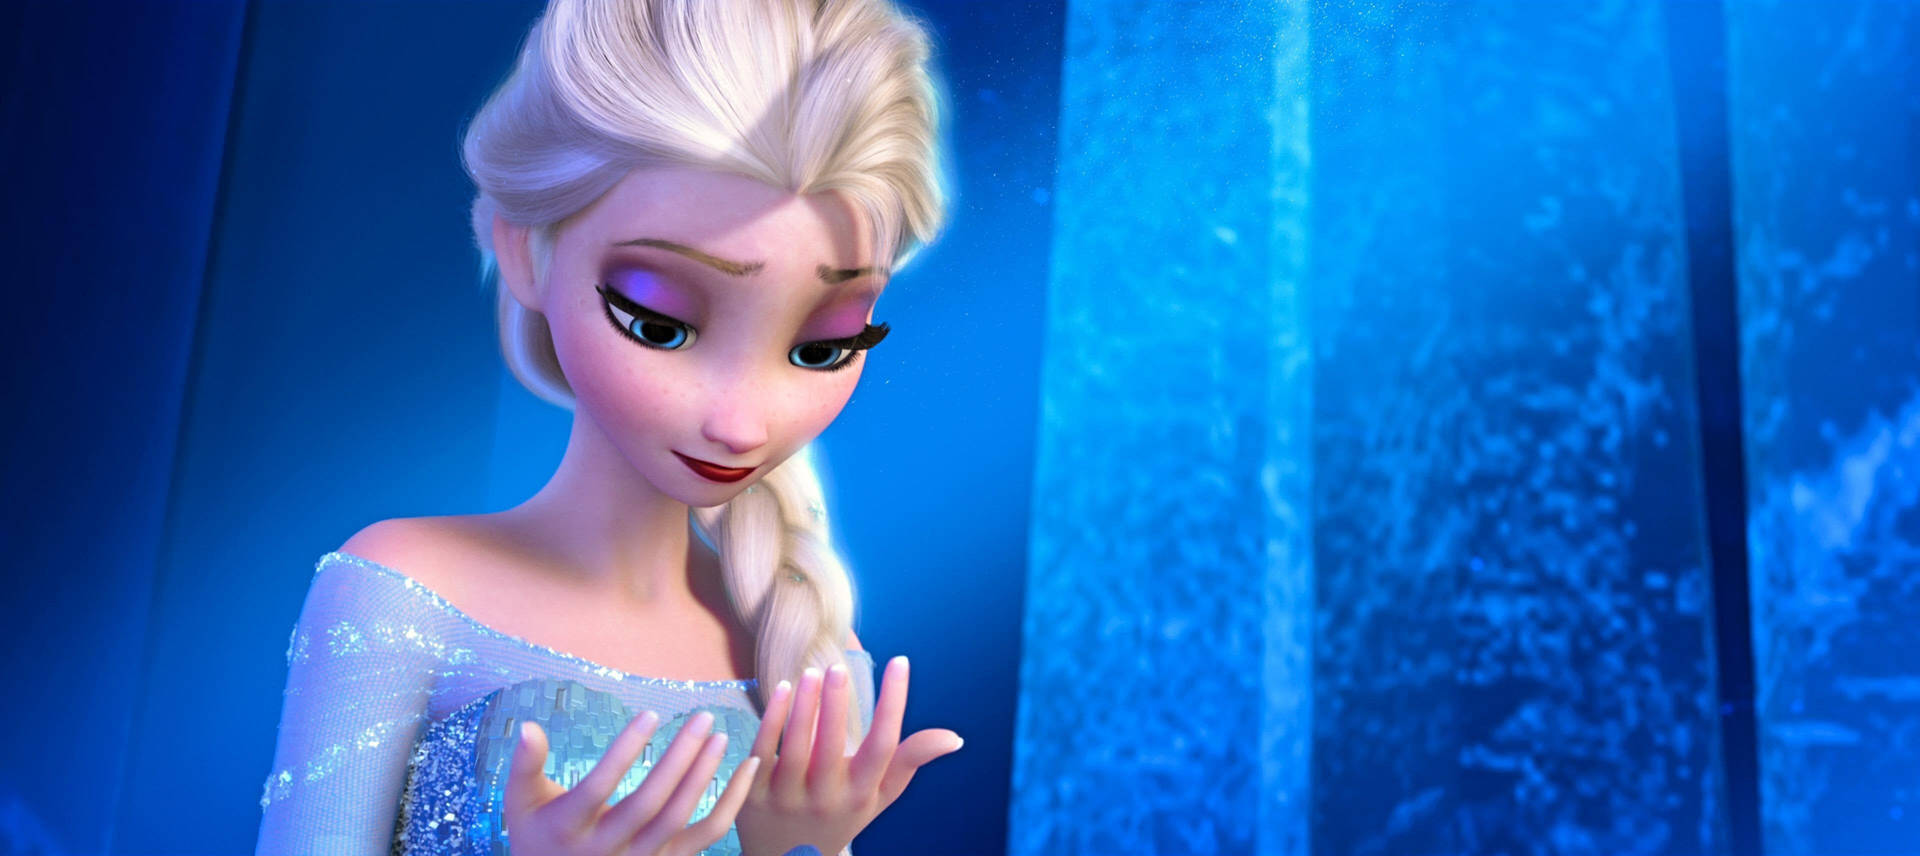 Elsa's Magical Hands Wallpaper